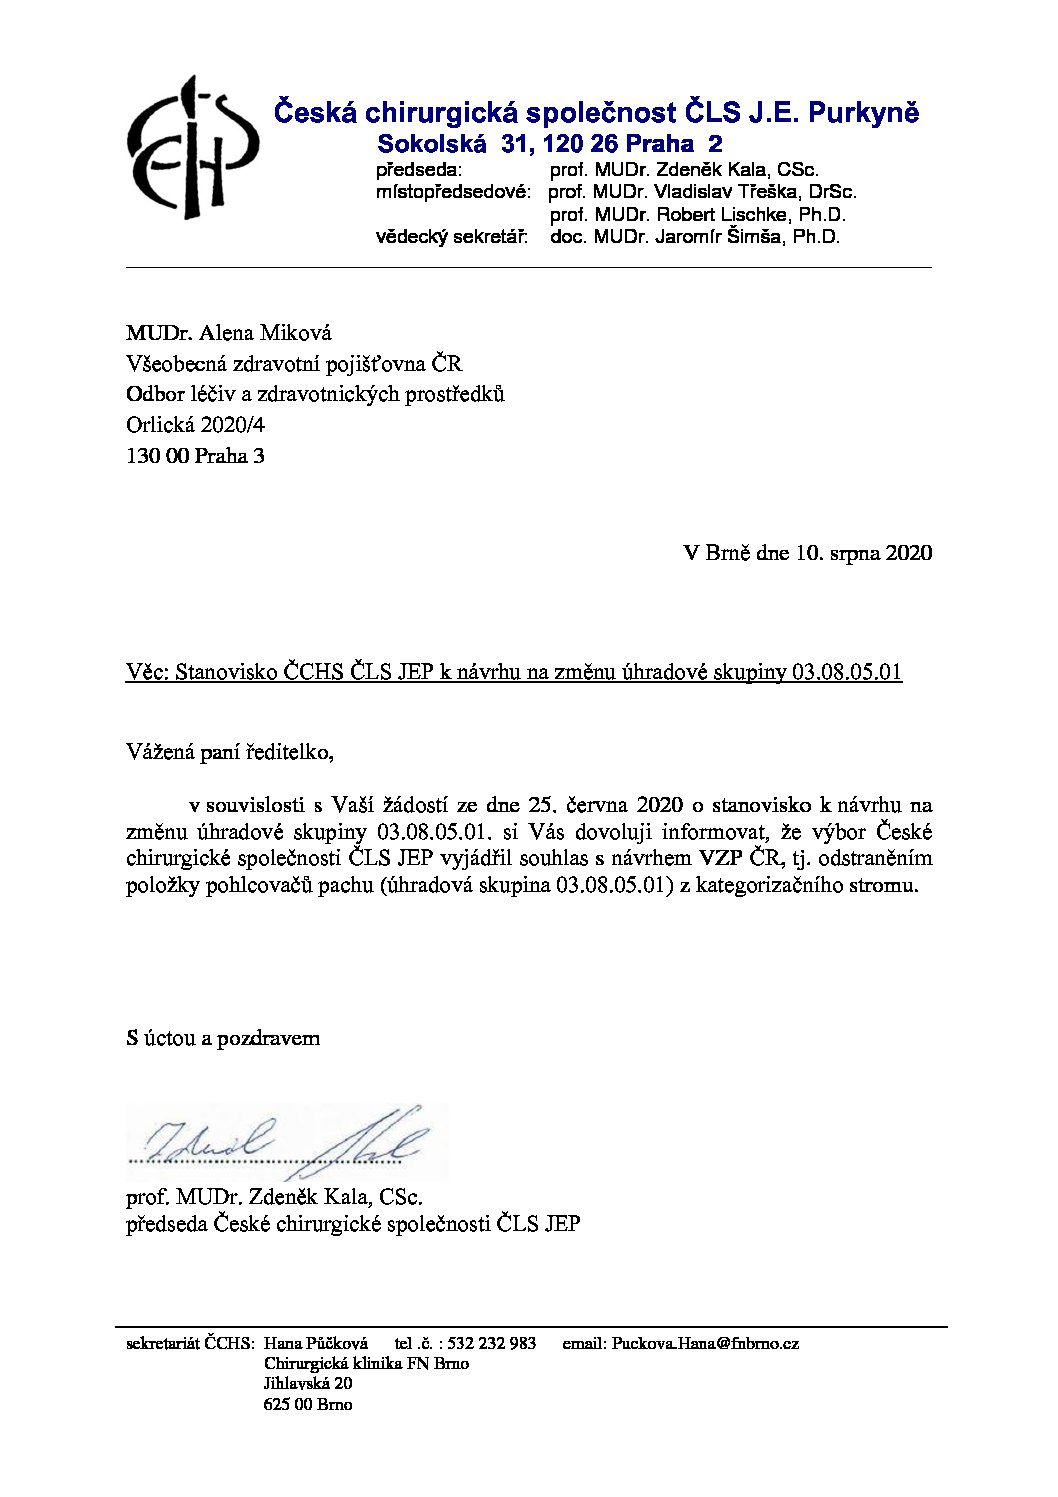 Stanovisko výboru ČCHS ČLS JEP k Návrhu VZP na změnu úhradové skupiny 03.08.05.01 (10. 8. 2020)